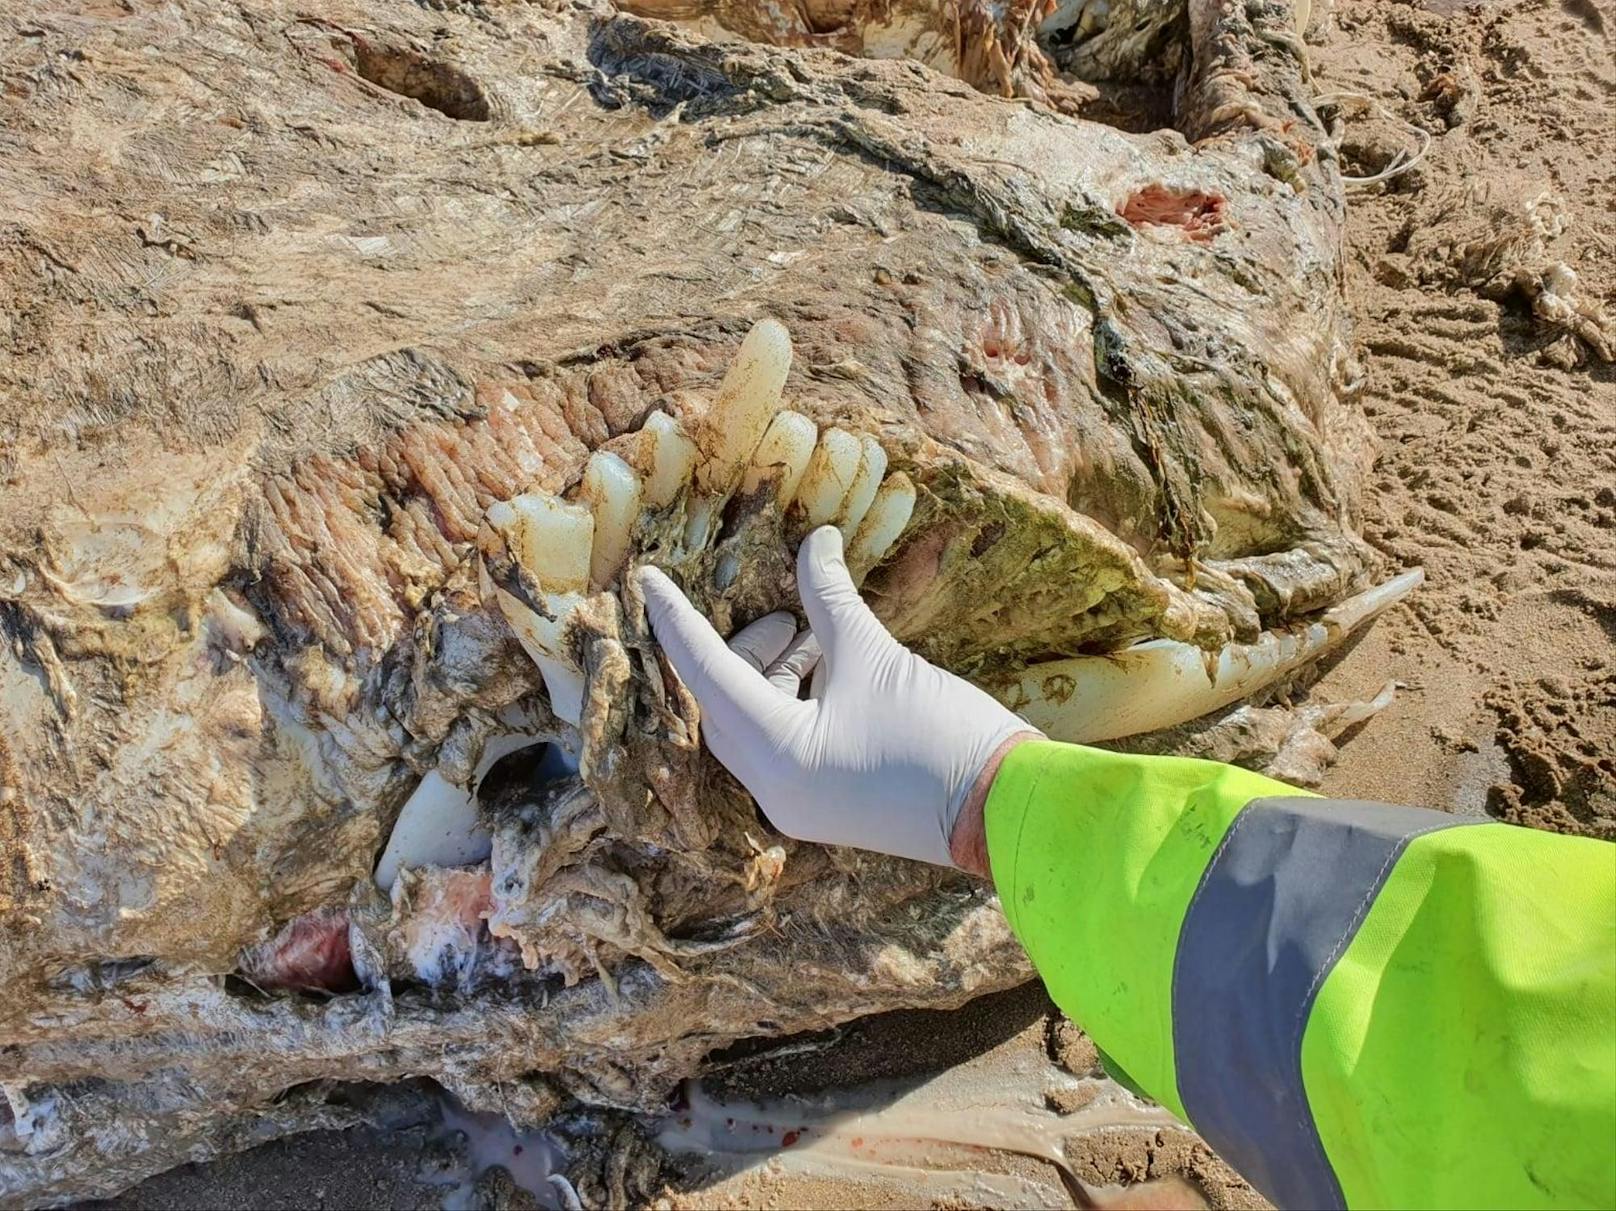 Dieser 23 Meter lange Kadaver wurde am Strand von Wales entdeckt.